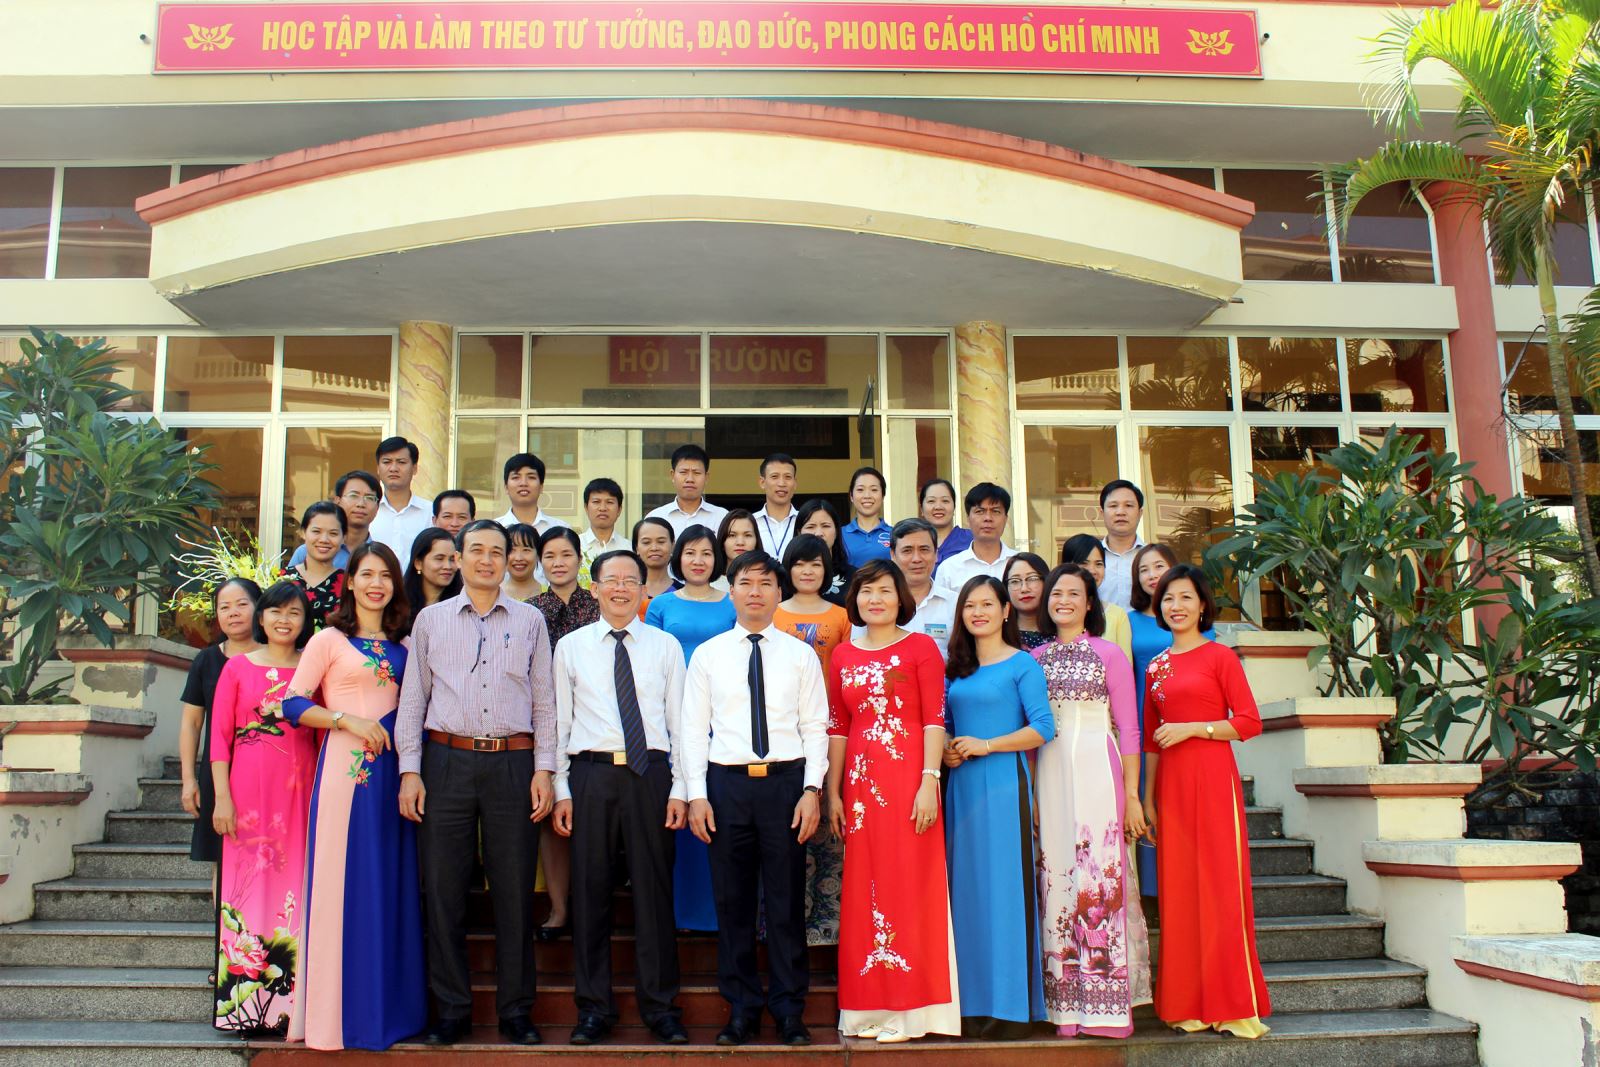 Giới thiệu về Trường Chính Trị Nguyễn Văn Linh tỉnh Hưng Yên